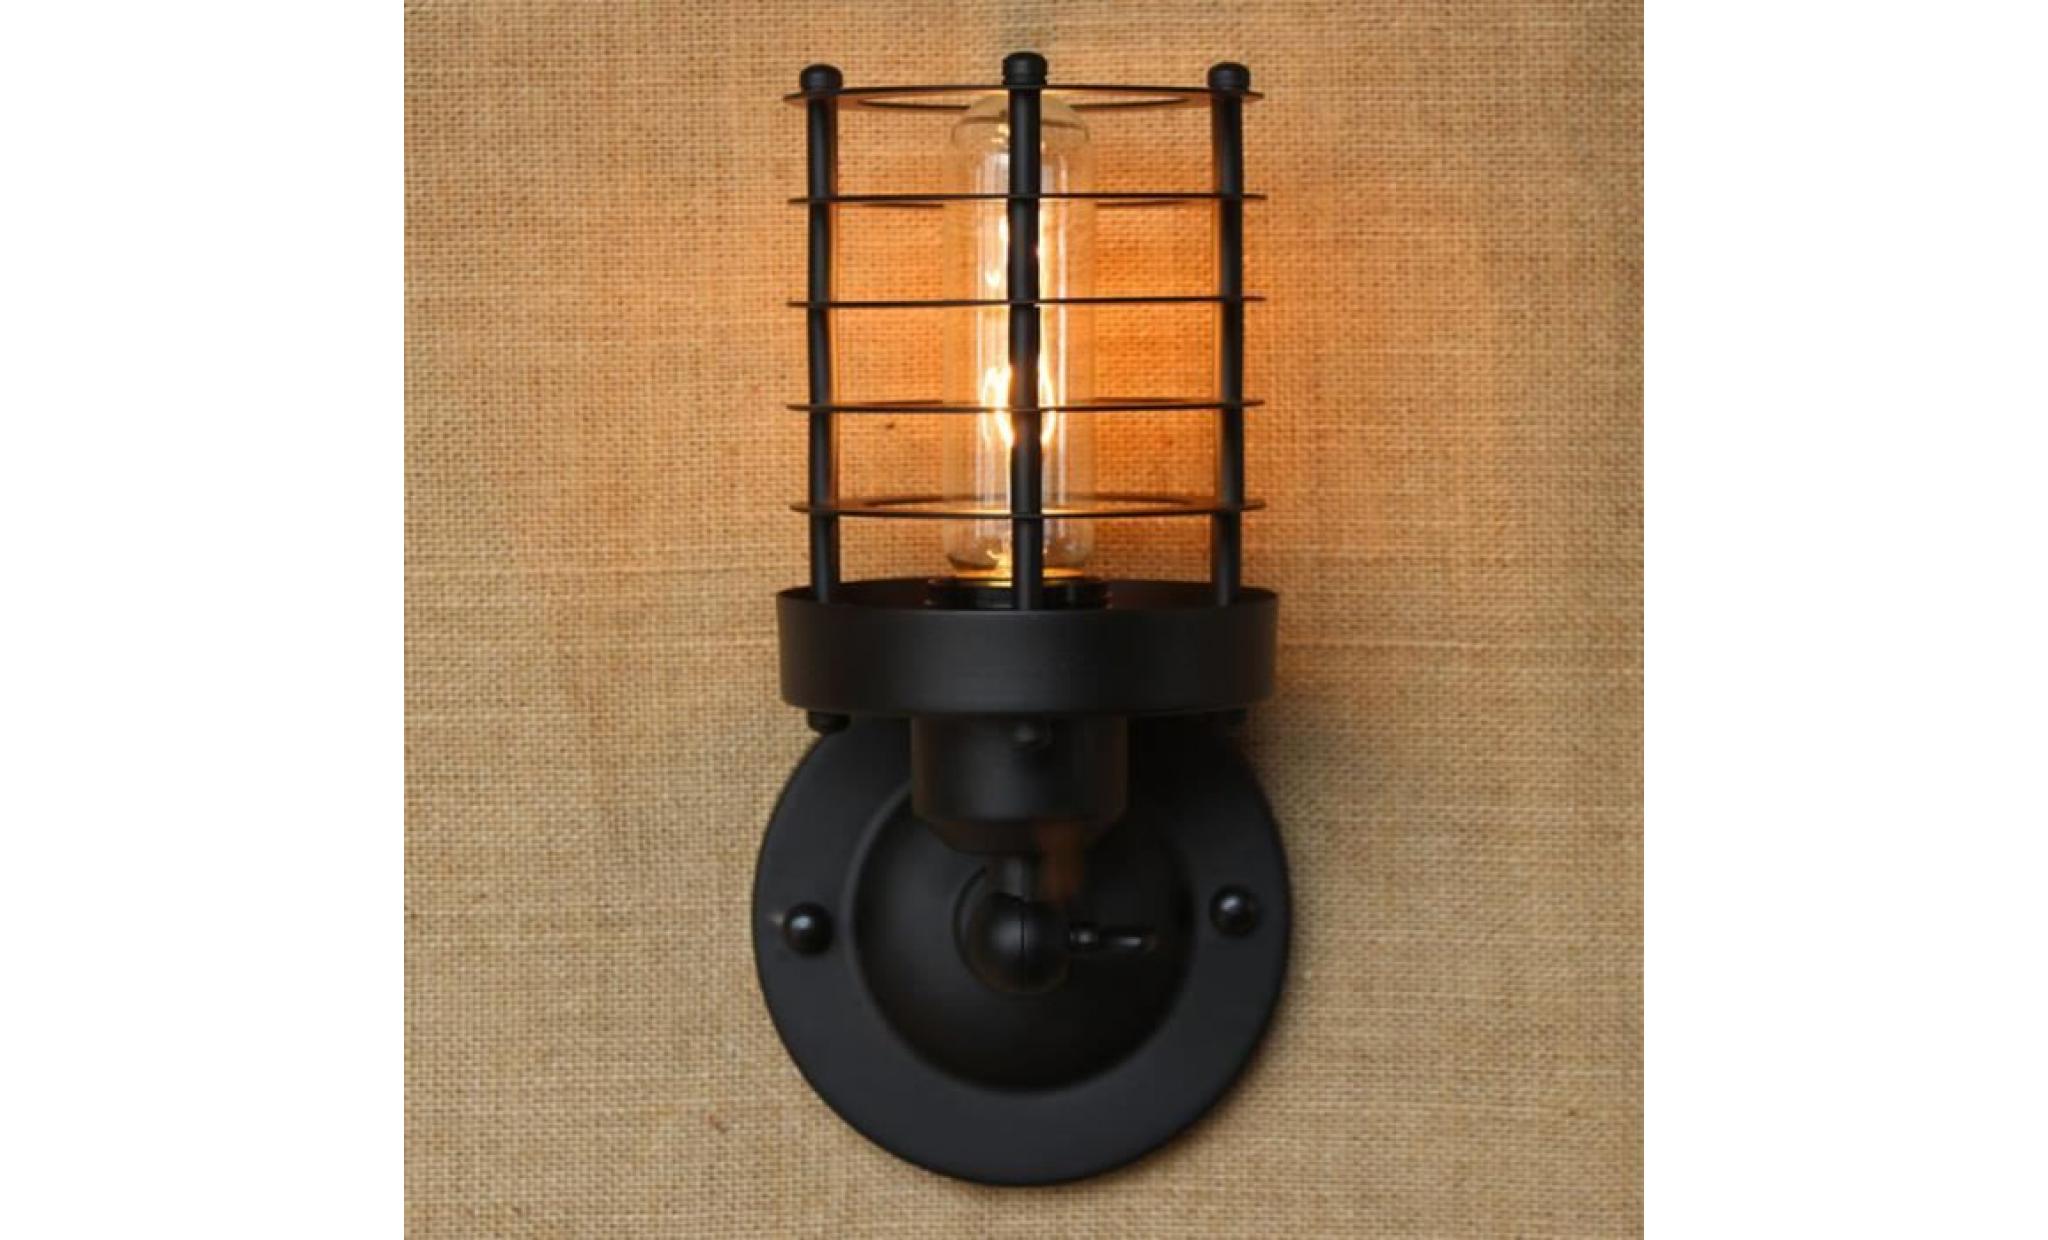 rétro vintage applique lampe murale industrielle intérieure mur de feu rh simple lustre rustique fixation de lampe en fer #2 pas cher